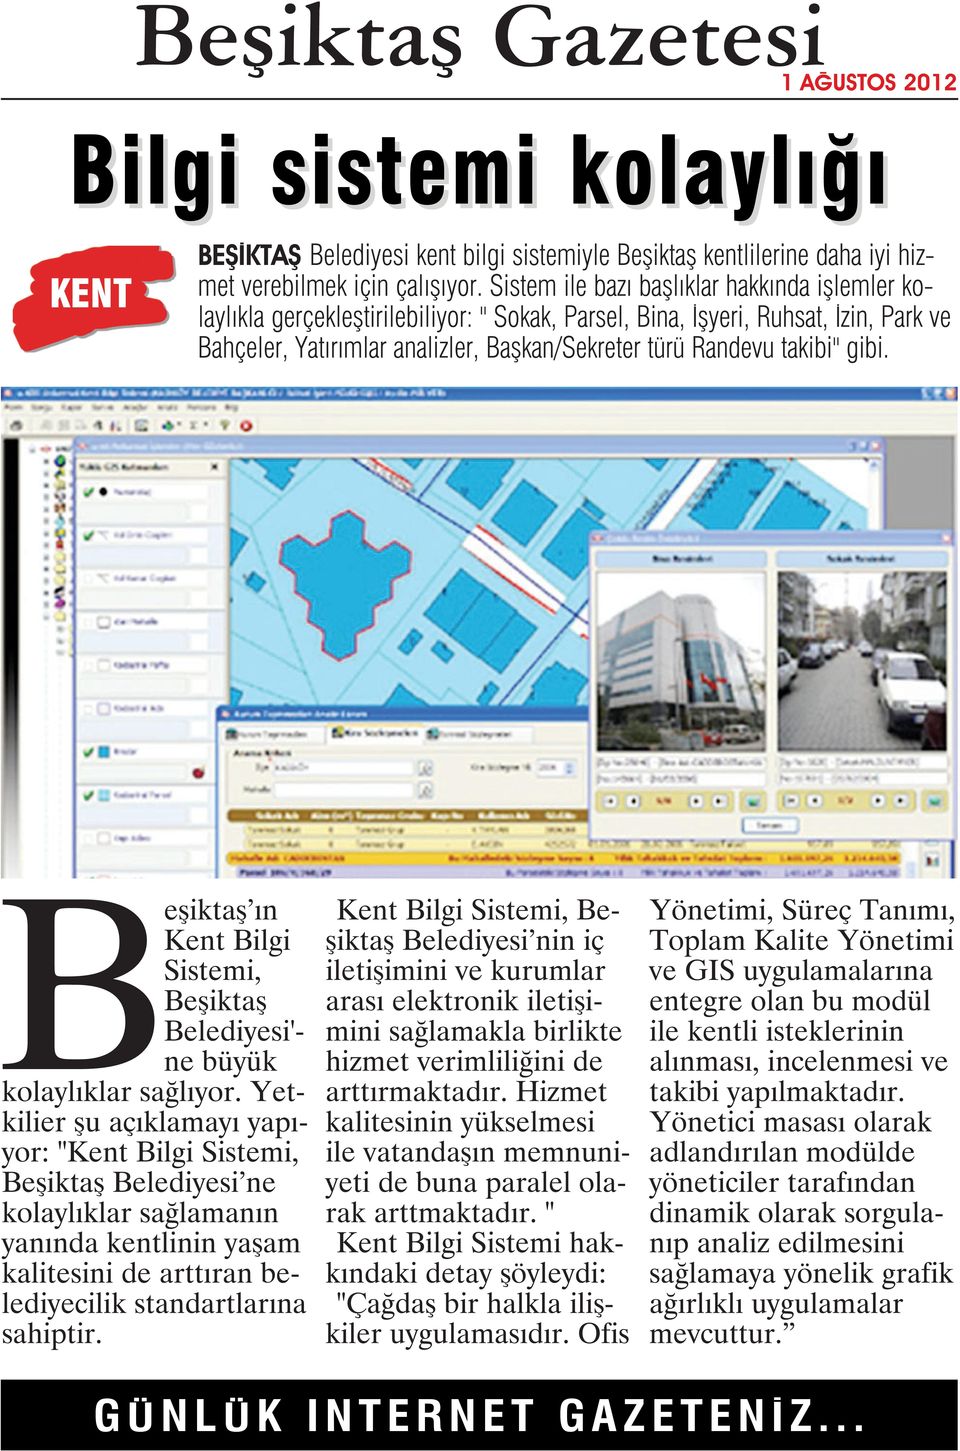 takibi" gibi. Beşiktaş ın Kent Bilgi Sistemi, Beşiktaş Belediyesi'- ne büyük kolaylıklar sağlıyor.